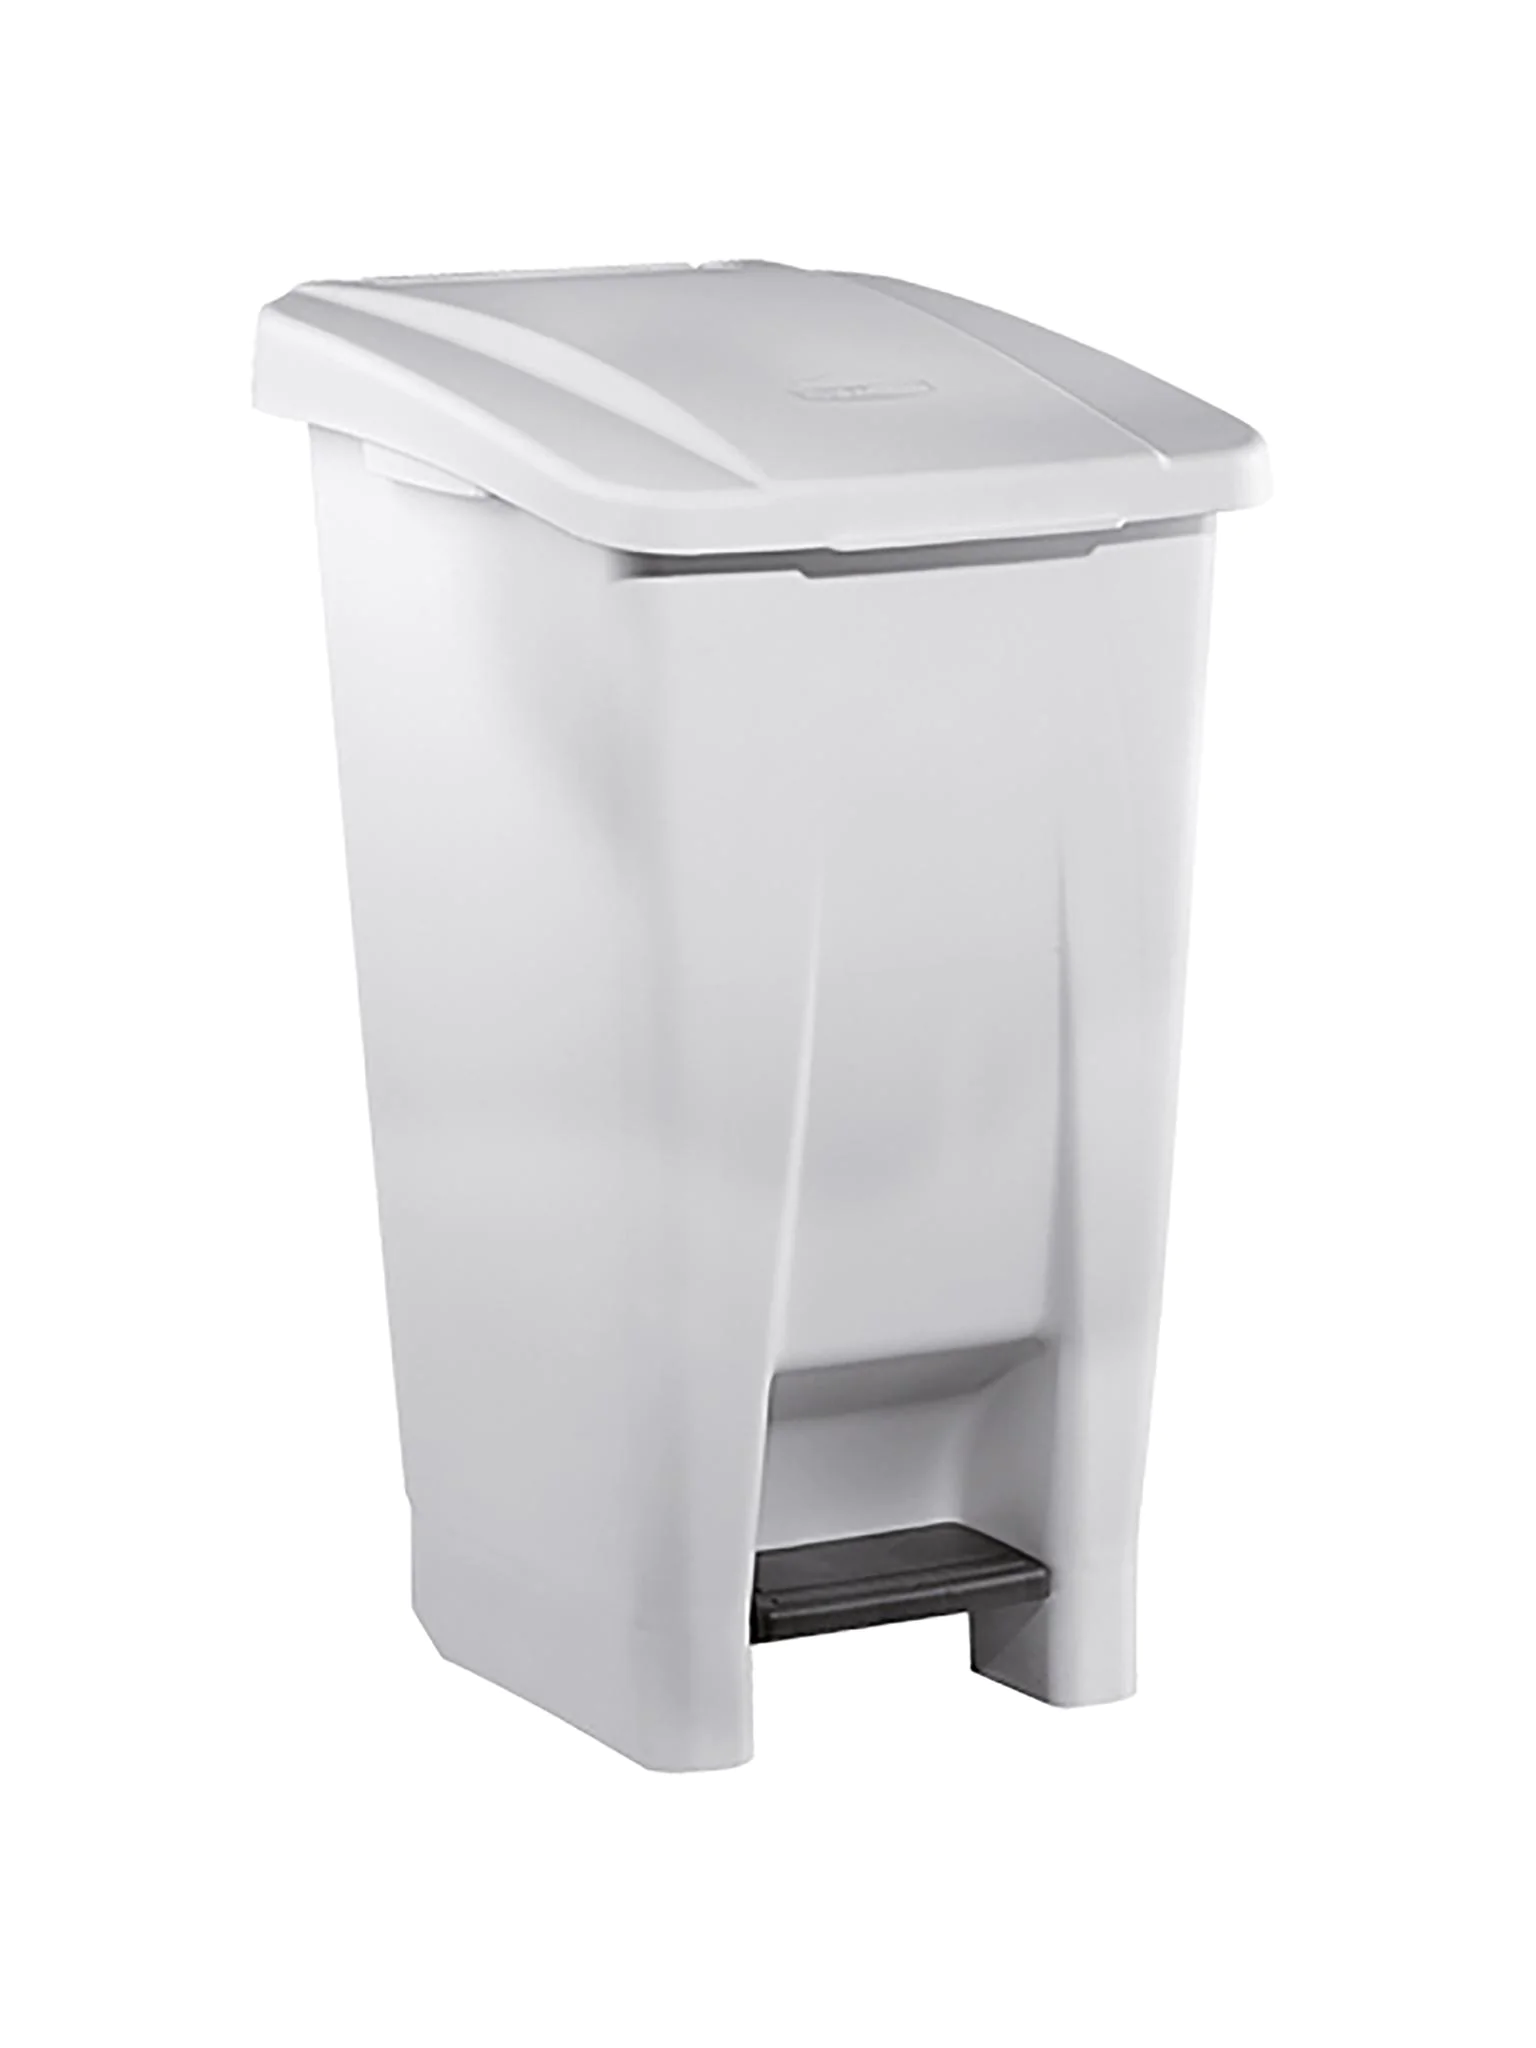 Abfallbehälter (Sammelcontainer) 60 L